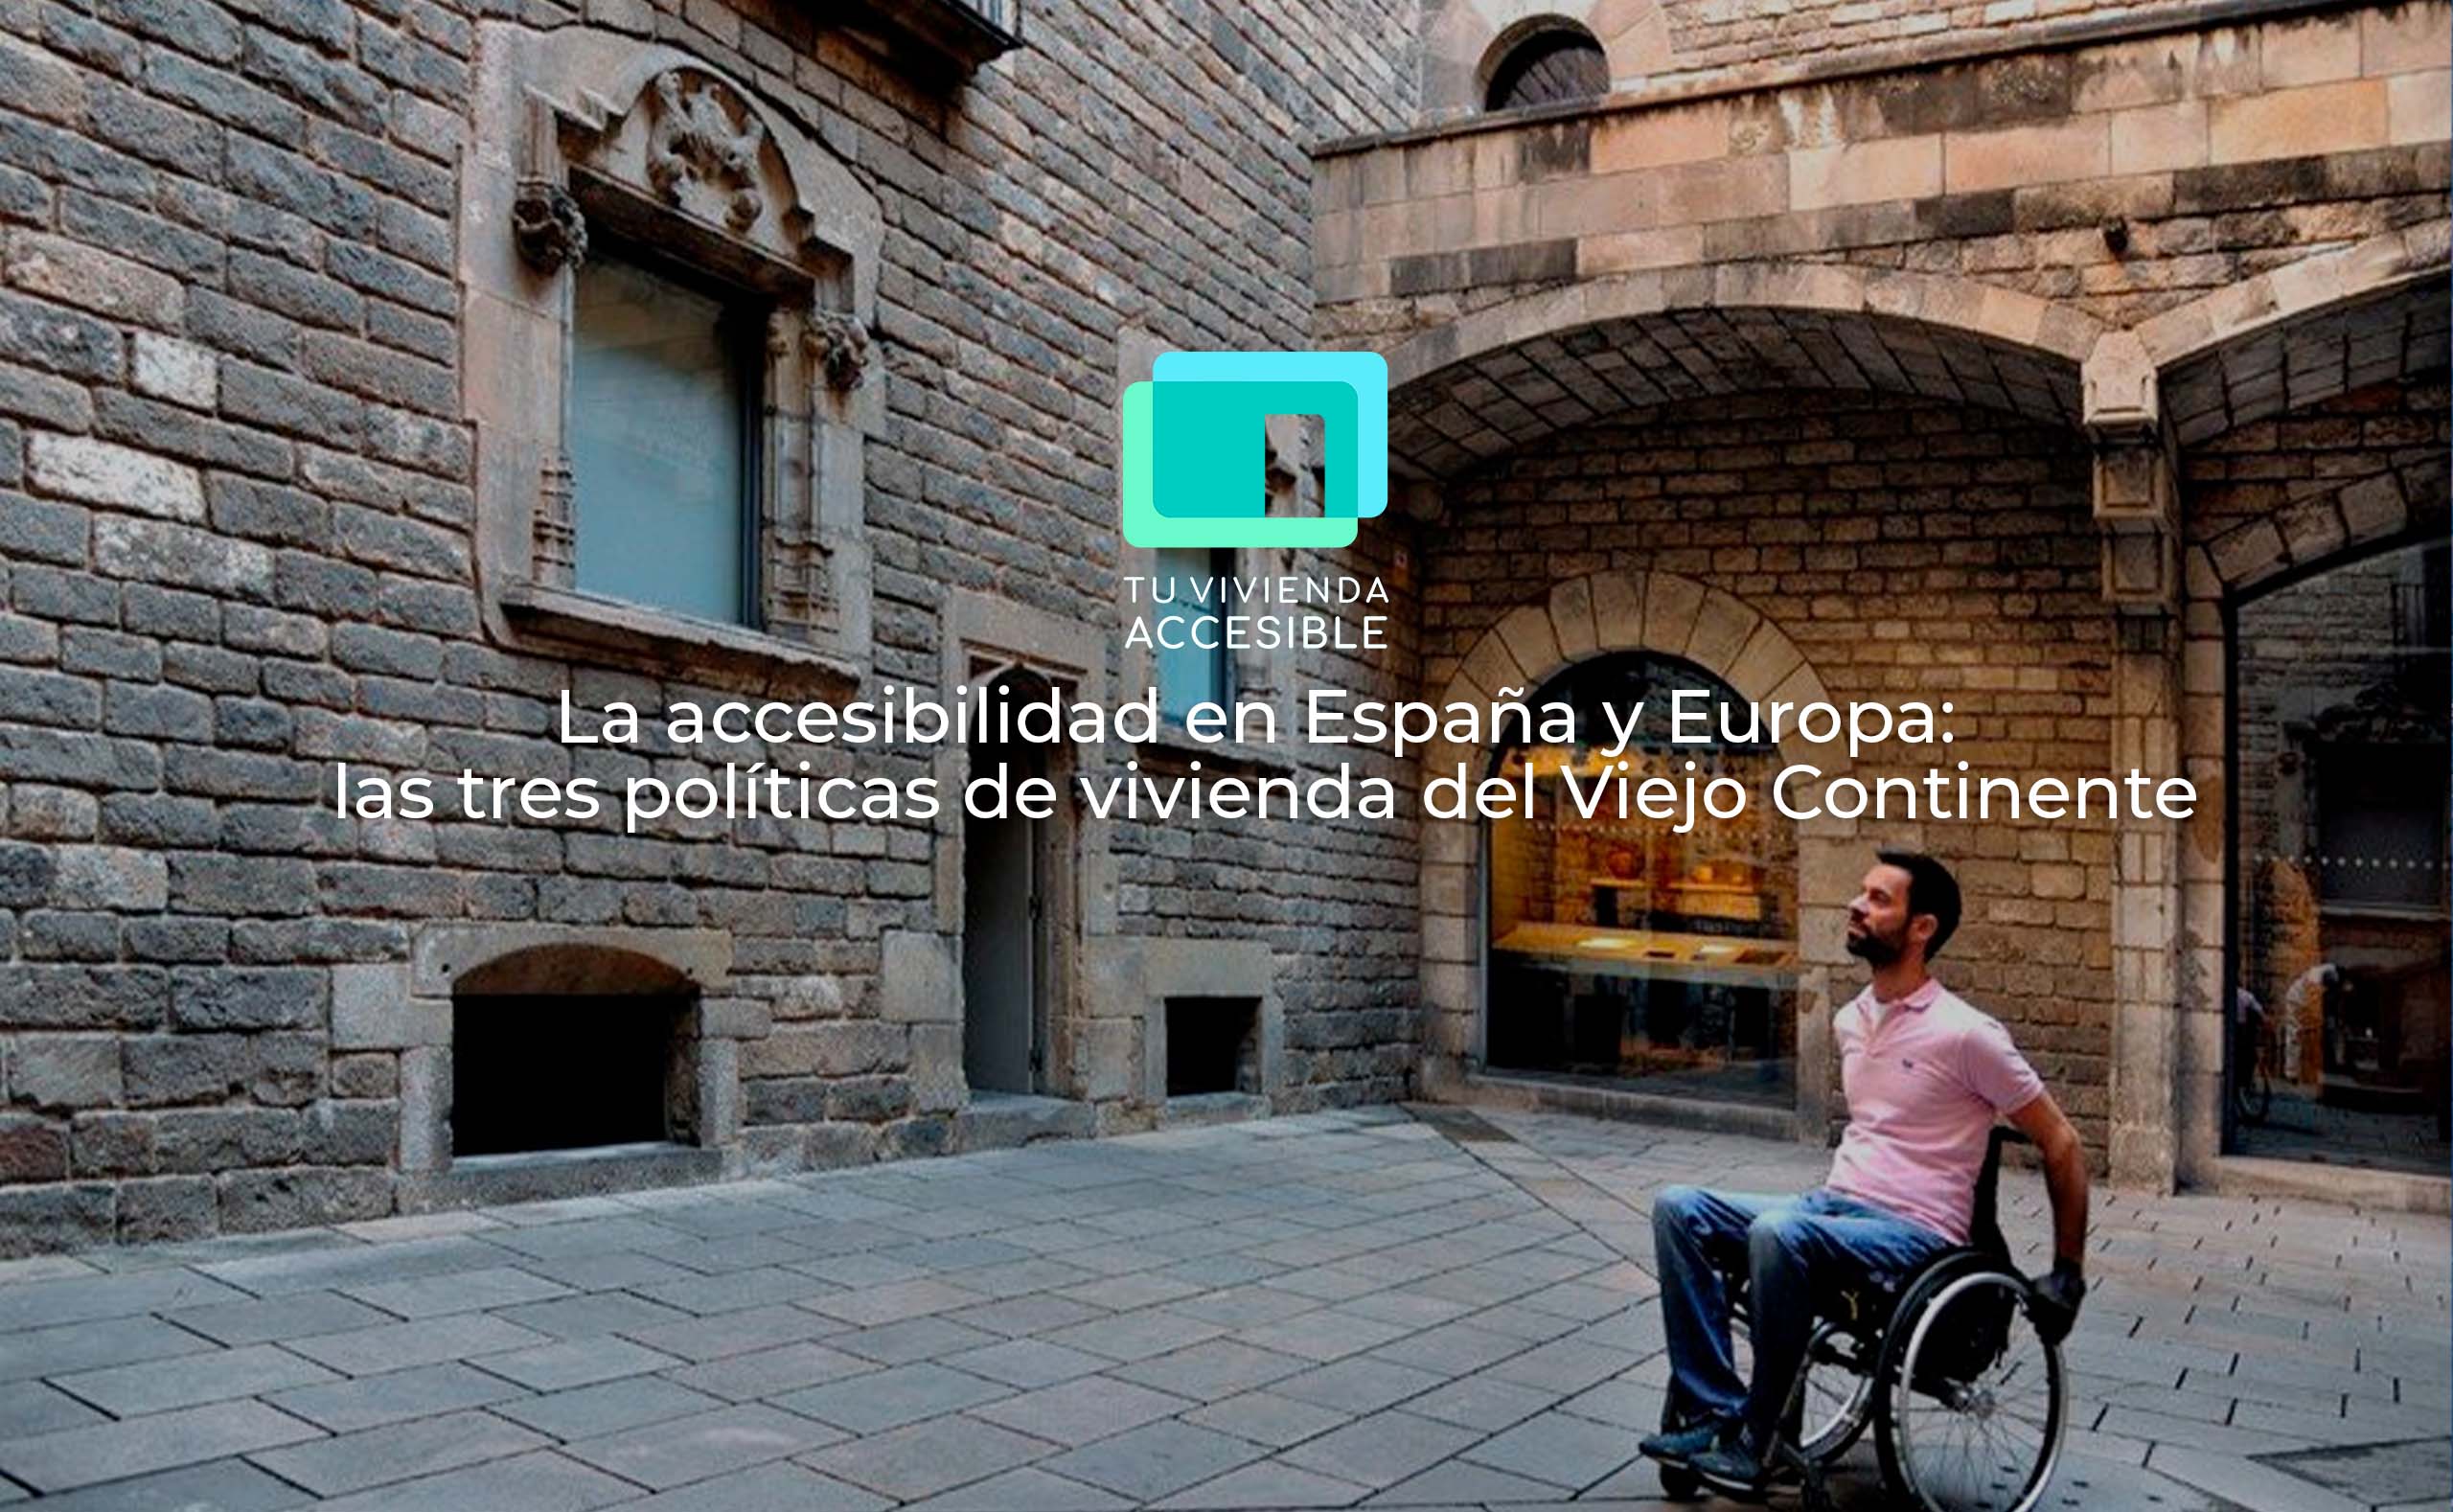 La accesibilidad en España y Europa: las tres políticas de vivienda del Viejo Continente